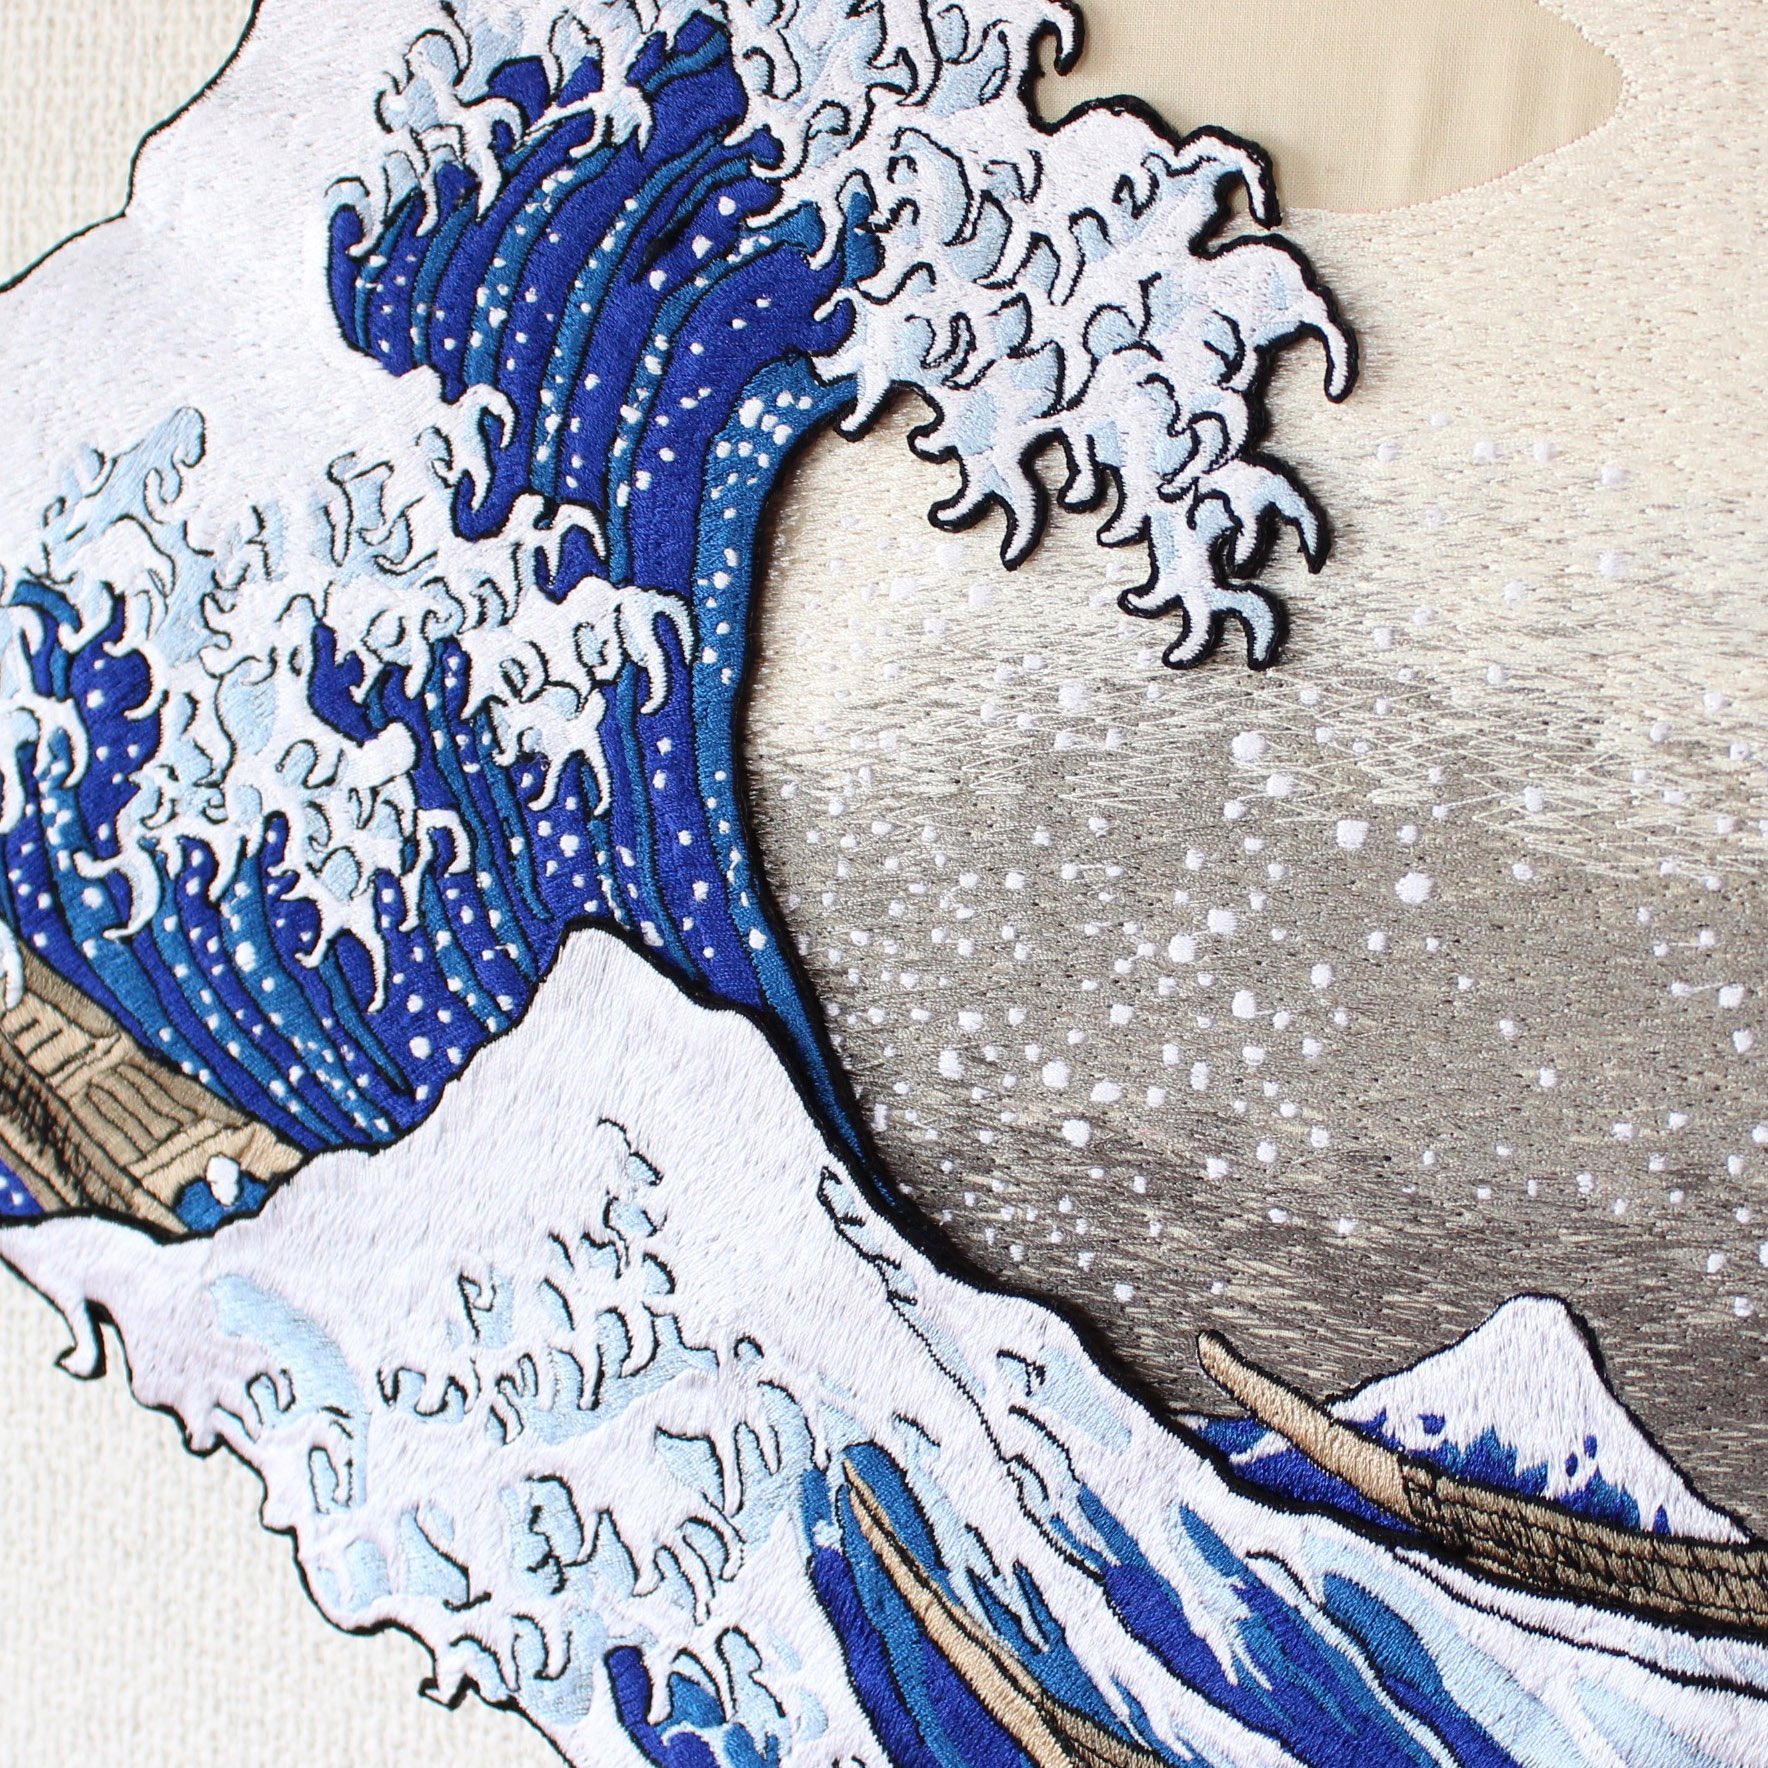 Ami 富嶽三十六景 神奈川沖浪裏 あの有名な浮世絵をダイナミックに刺繍で表現してみました 平面的な浮世絵を刺繍で表現することでさらに立体的に 迫力のある絵画へと仕上げています お部屋に飾れるウォールアートとして Ukiyoe展とminneコラボ